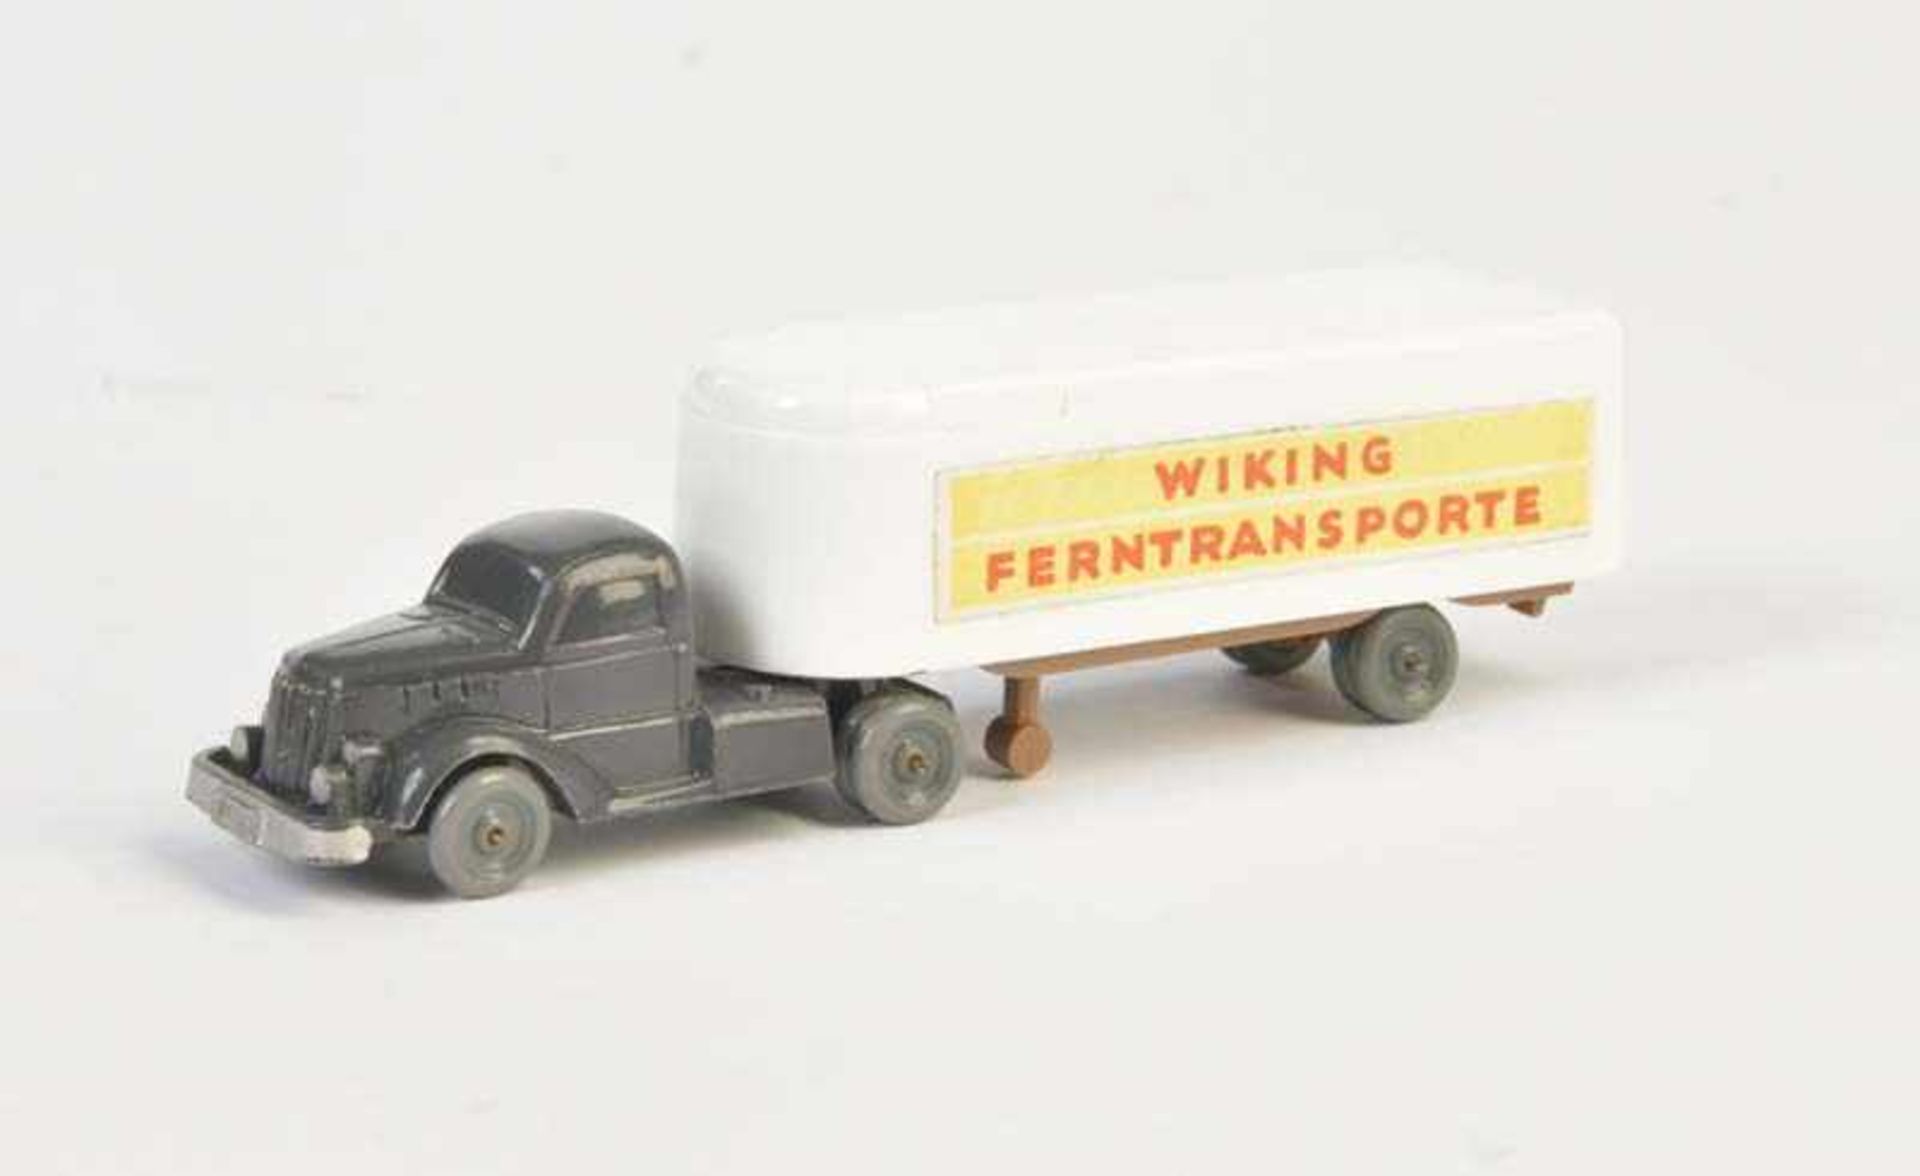 Wiking, LKW Ferntransport, W.-Germany, 1:90, 1 Stütze fehlt, sonst guter ZustandWiking, Truck Long-